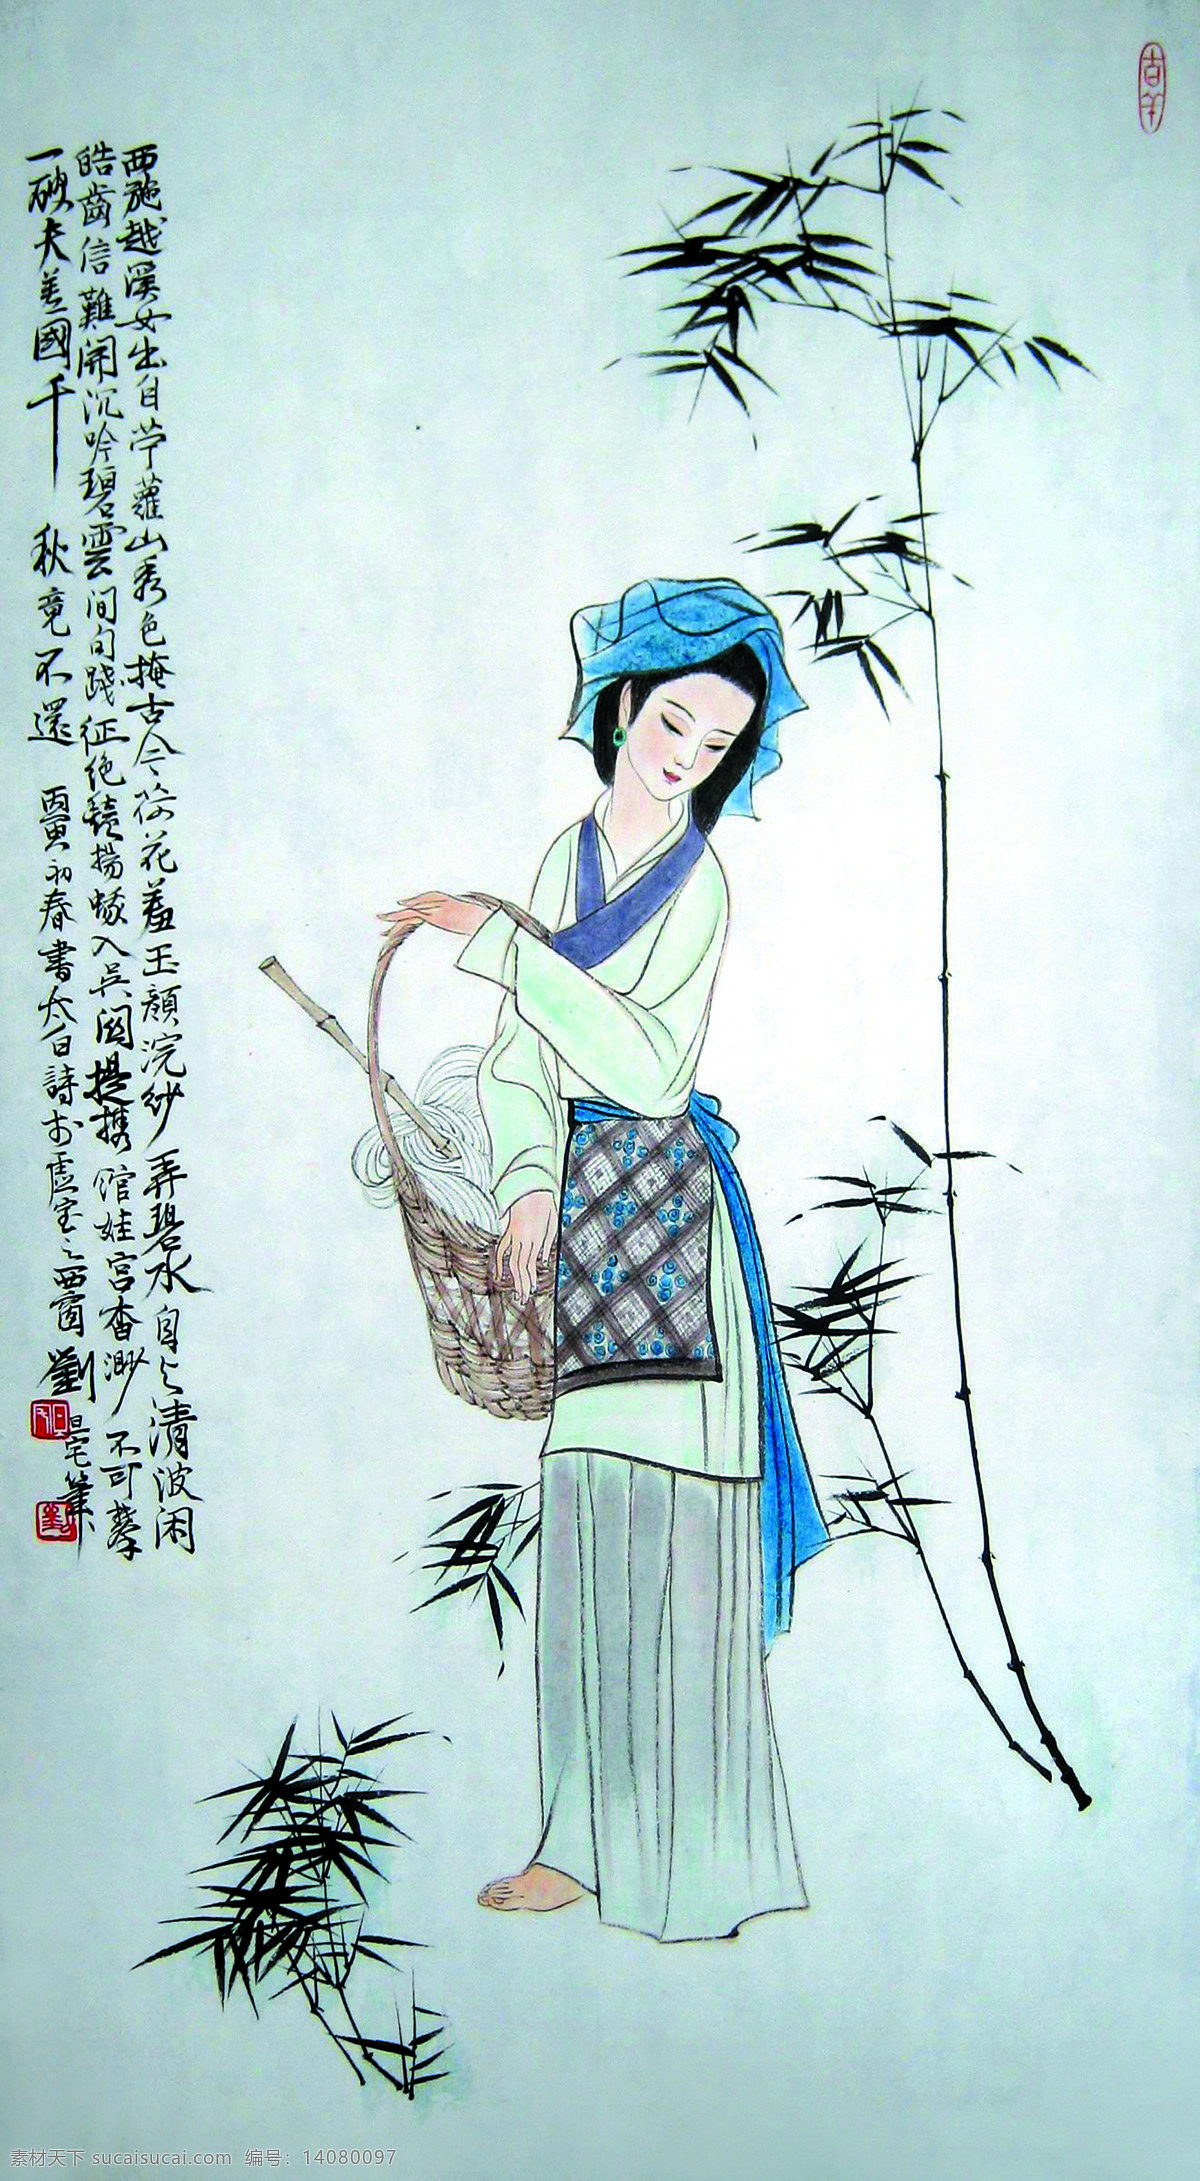 古代仕女图 美术 中国画 工笔画 人物画 女人 女子 仕女 美人西施 竹子 文化艺术 绘画书法